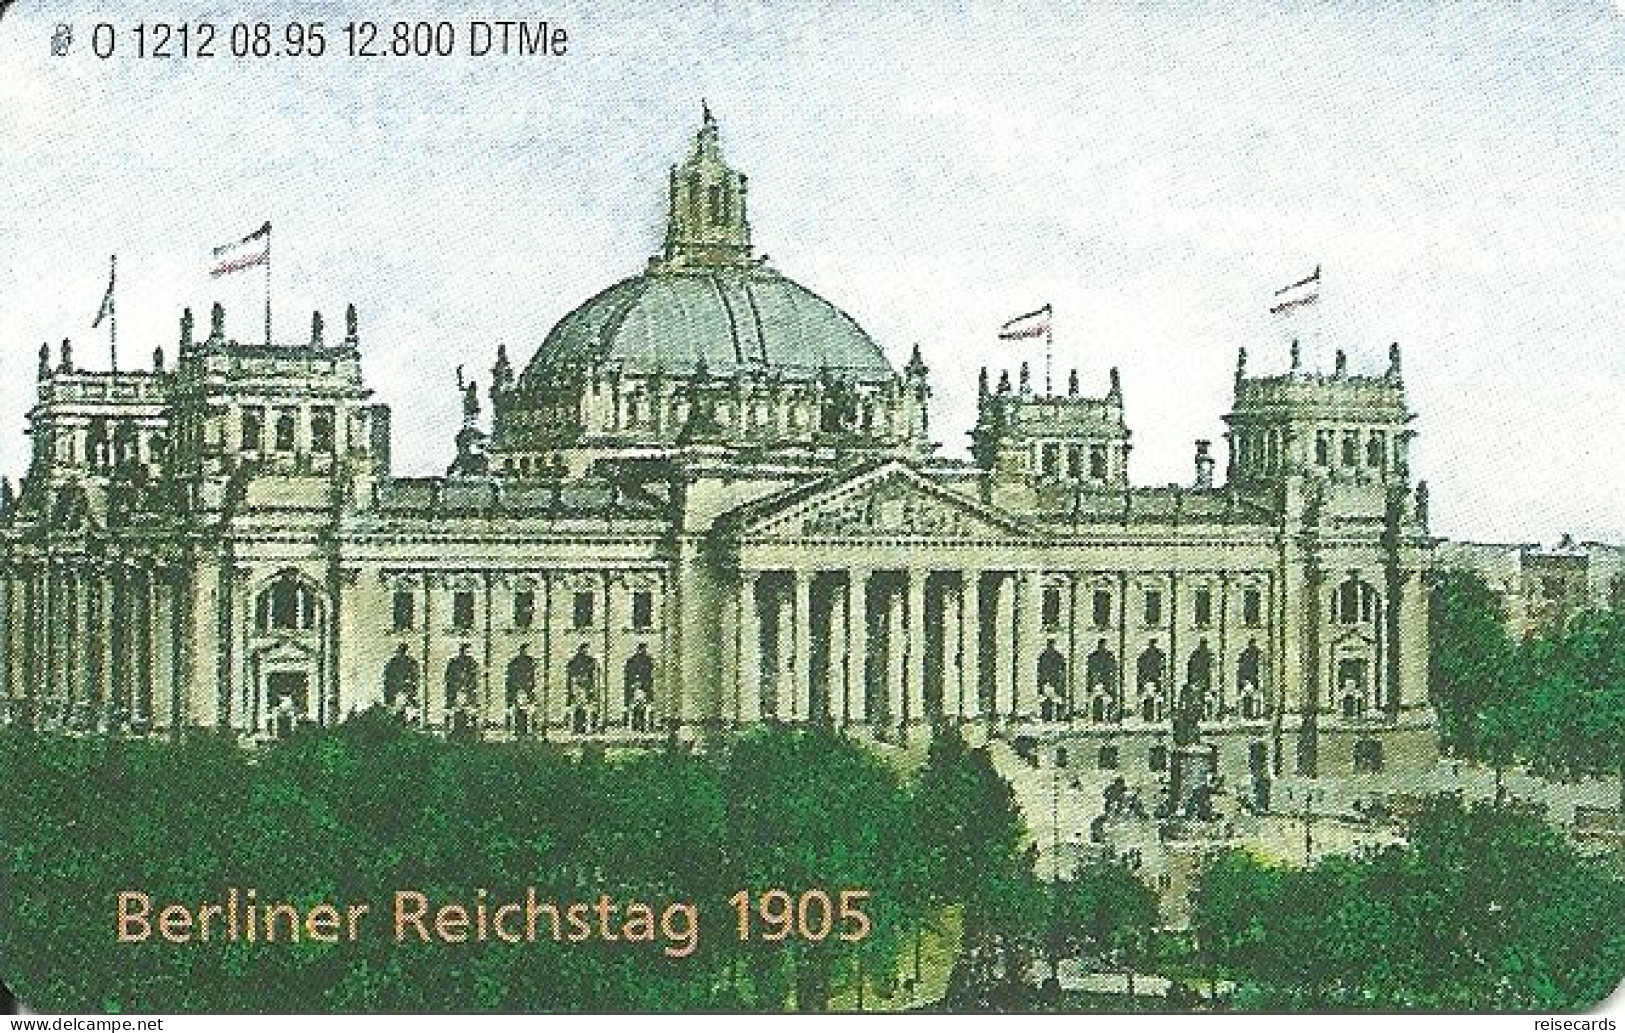 Germany: O 1212 08.95 Telecard Expo 1995 Berlin. Berliner Reichstag. Mint - O-Series: Kundenserie Vom Sammlerservice Ausgeschlossen